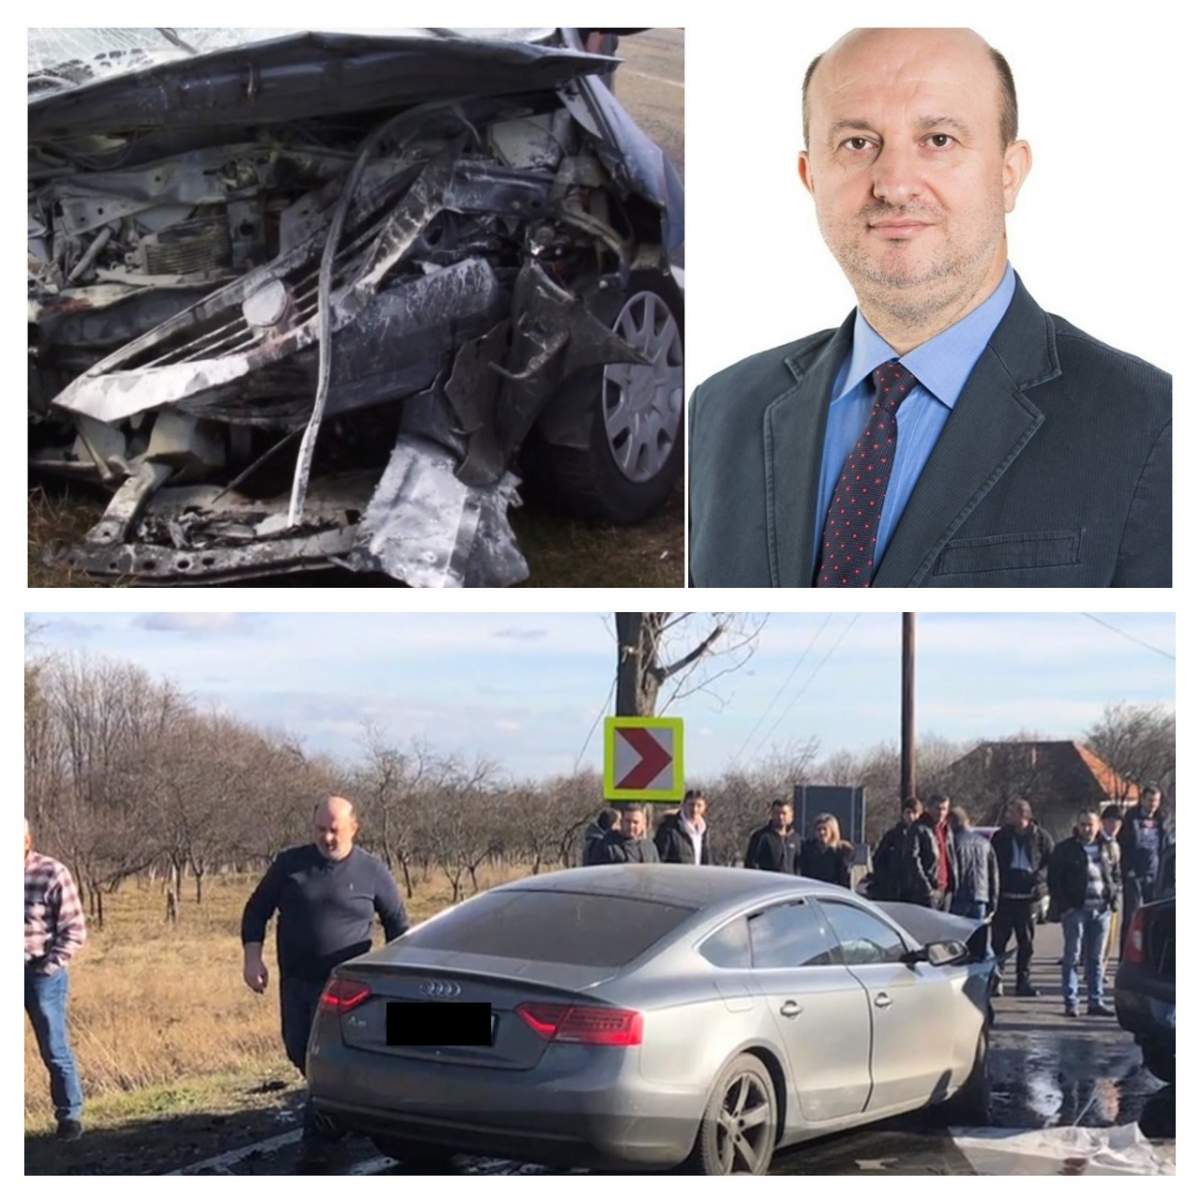 Ancheta accidentului în care a fost implicat fostul ministru Daniel Chiţoiu, blocată. Ce s-a decis în acest caz